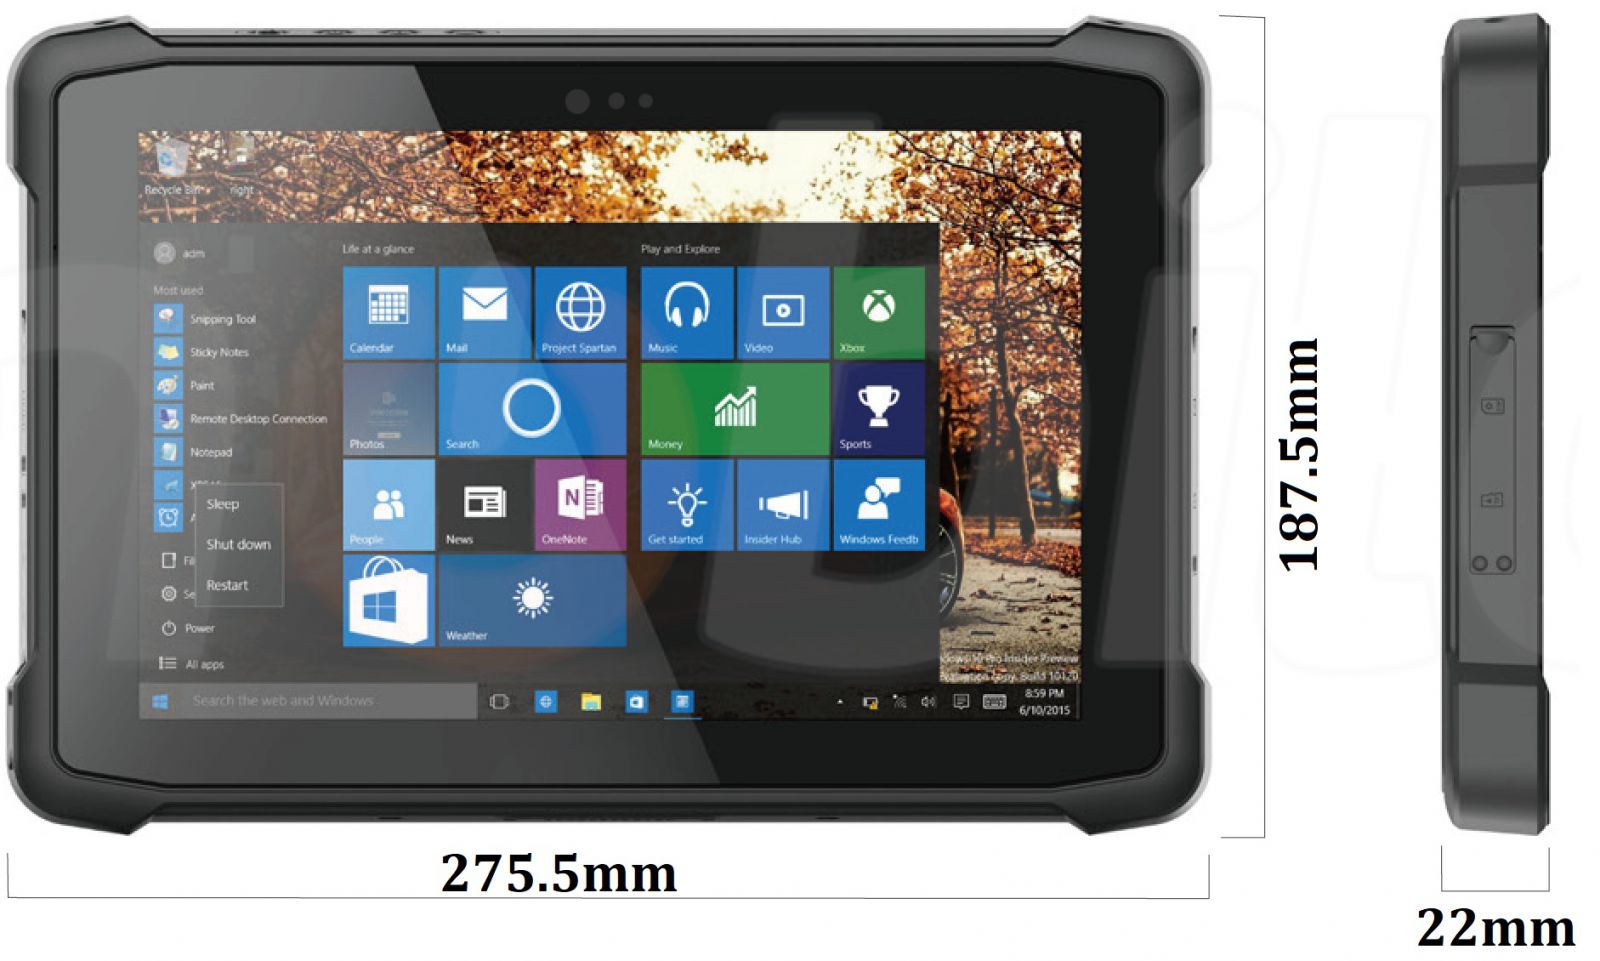 Emdoor I11H v.5 - Wytrzymay, dziesiciocalowy tablet z czytnikiem kodw 1D MOTO, Bluetooth 4.2, 4GB RAM pamici, dyskiem 64GB, NFC, 4G i Windows 10 PRO